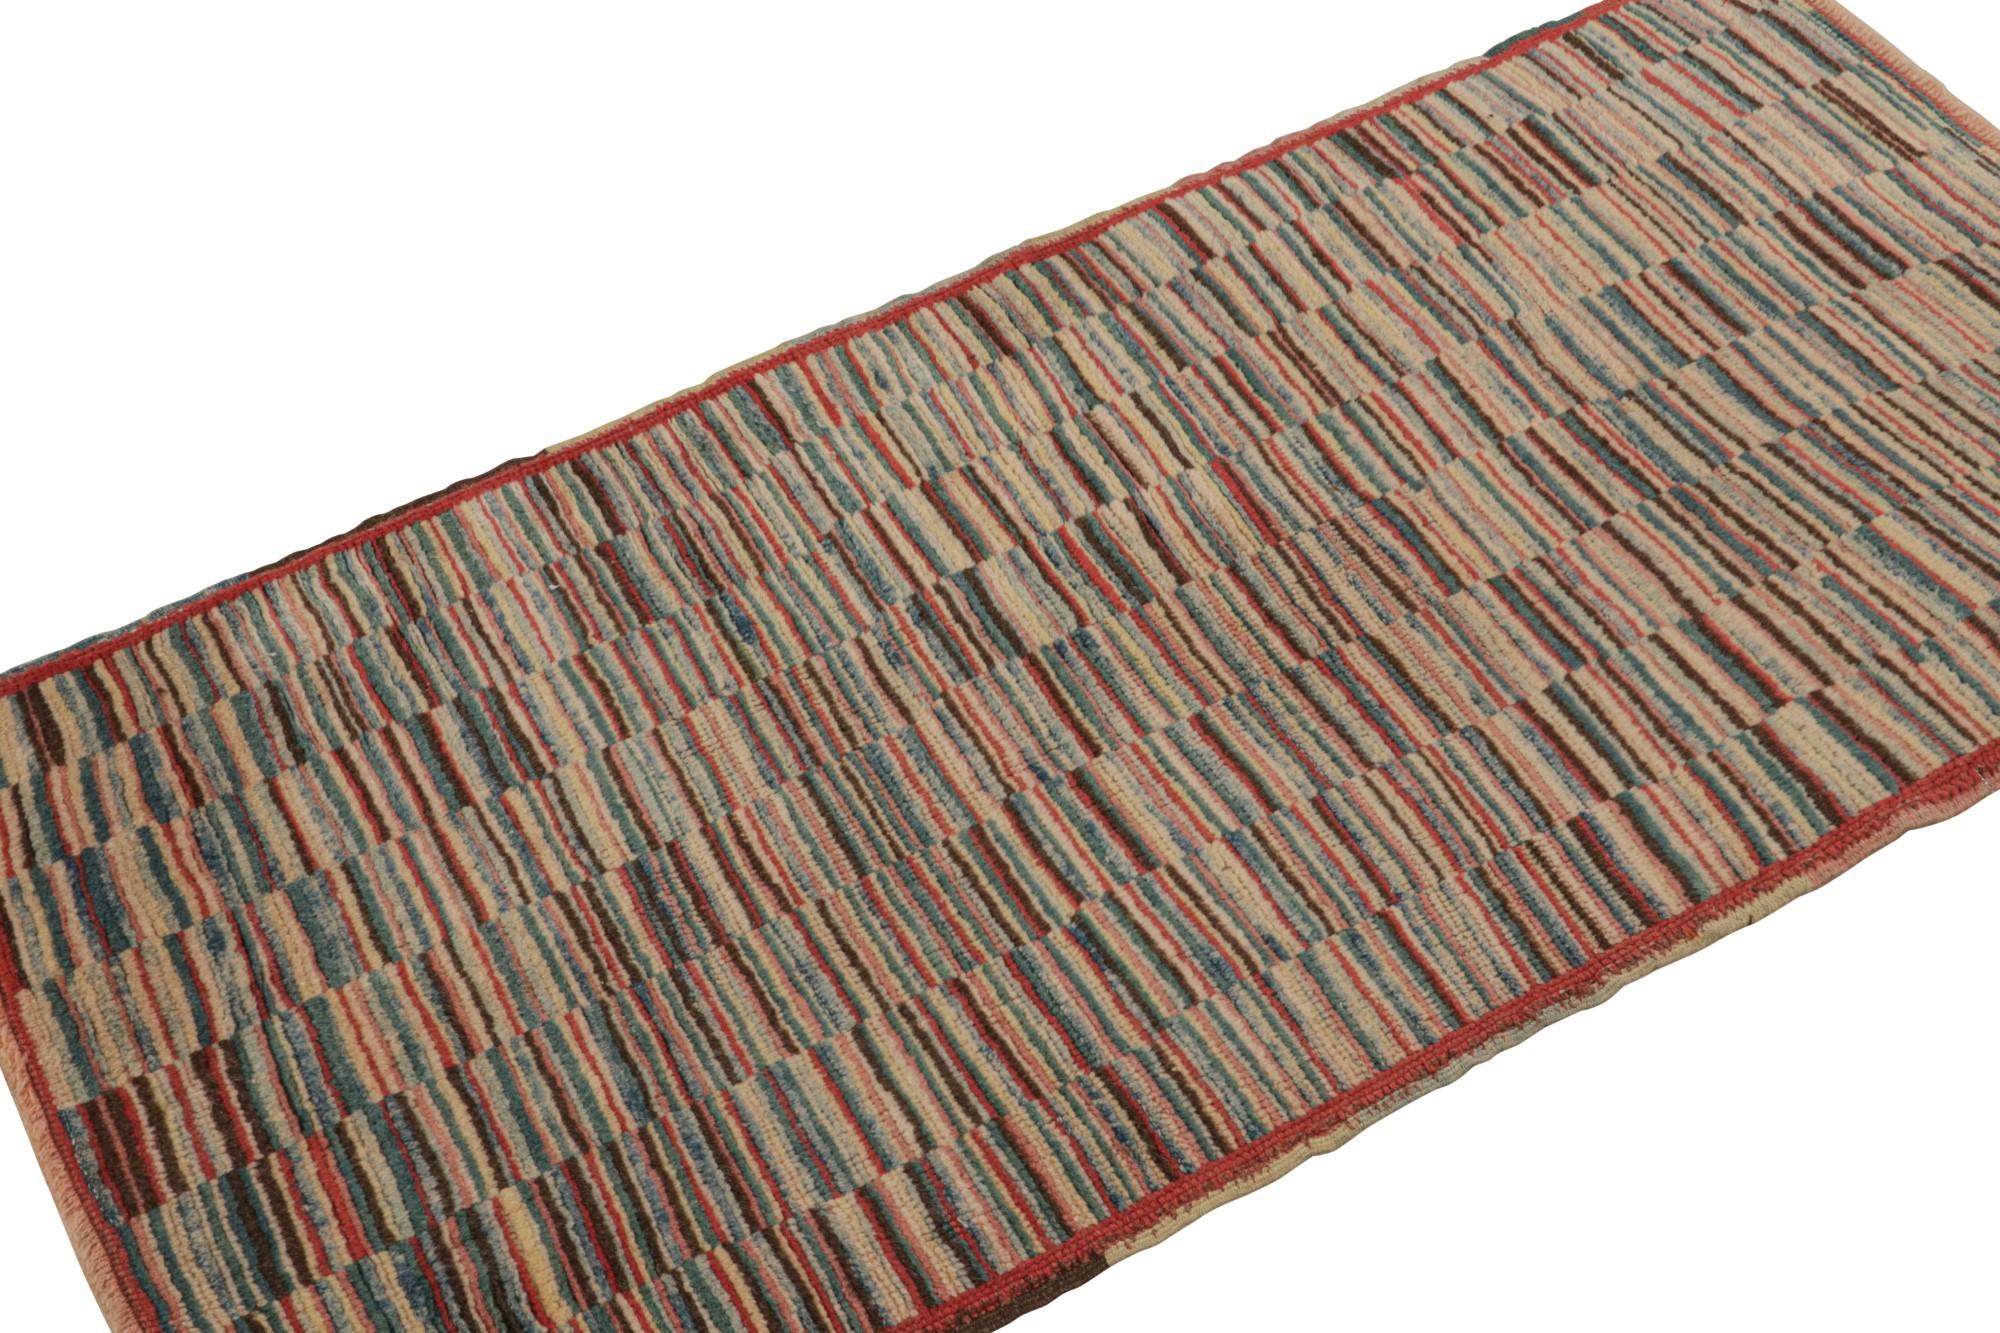 Dieser handgeknüpfte Wollteppich (ca. 1950-1960) aus Burdur (2x5) ist eine aufregende Ergänzung der Stammesteppich-Kuration von Rug & Kilim. Aus der titelgebenden Stadt im türkischen Anatolien stammend, ist es ein seltenes Stück einzigartiger